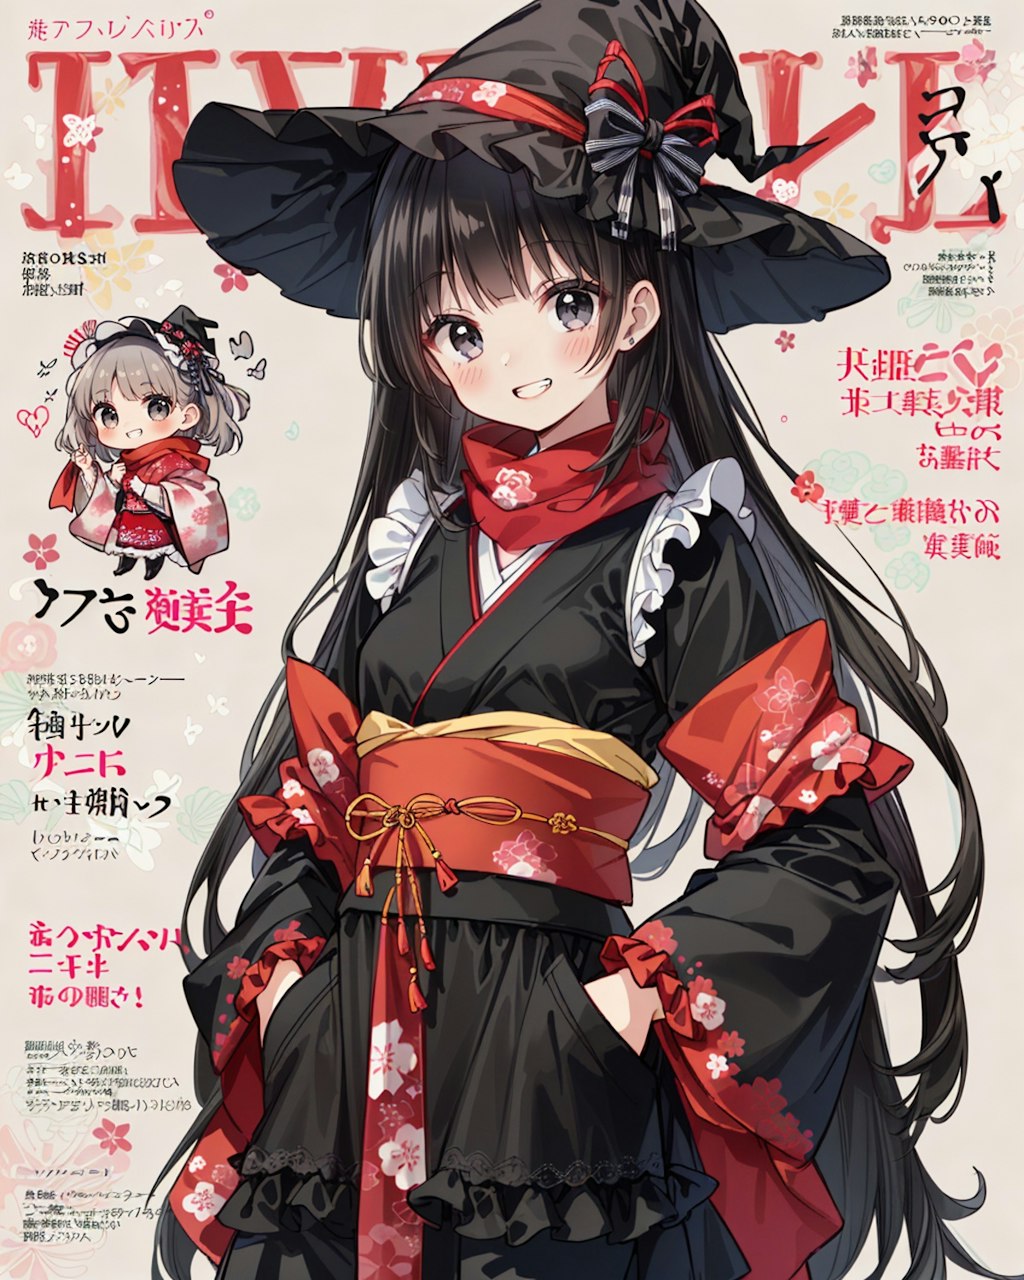 桜模様の着物姿な魔女ファッション雑誌の表紙風